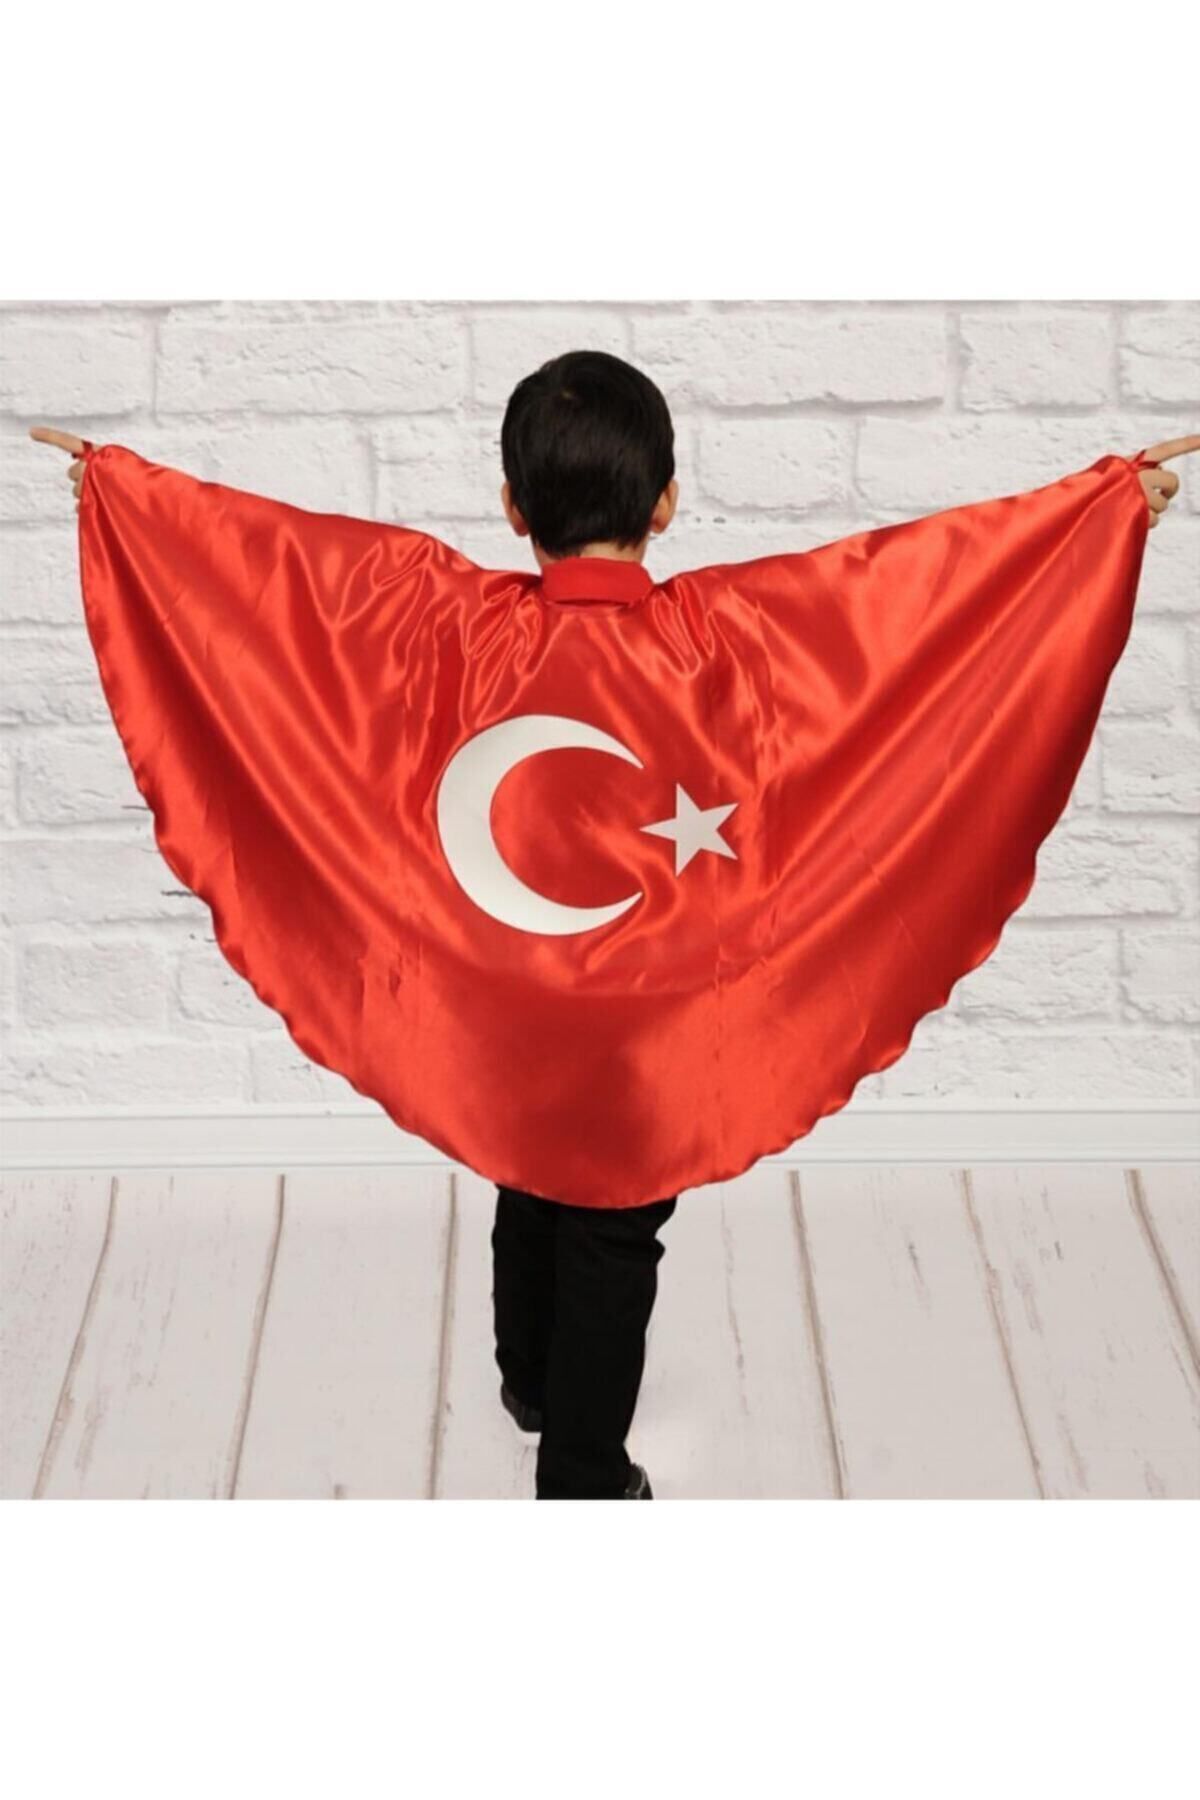 ALKANO Türk Bayraklı Pelerin